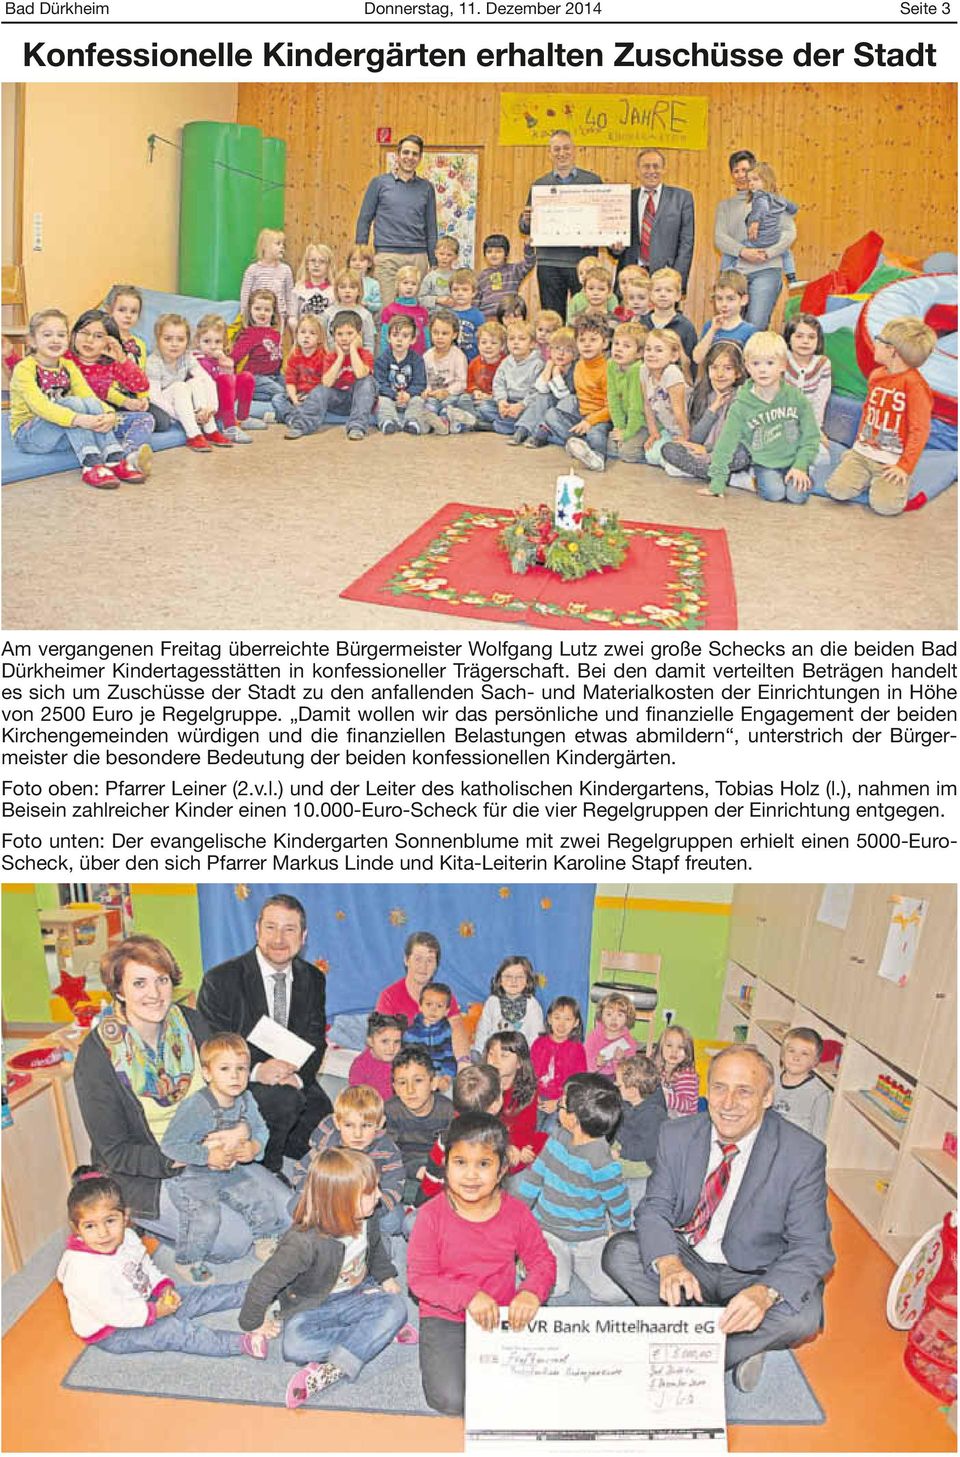 Kindertagesstätten in konfessioneller Trägerschaft.